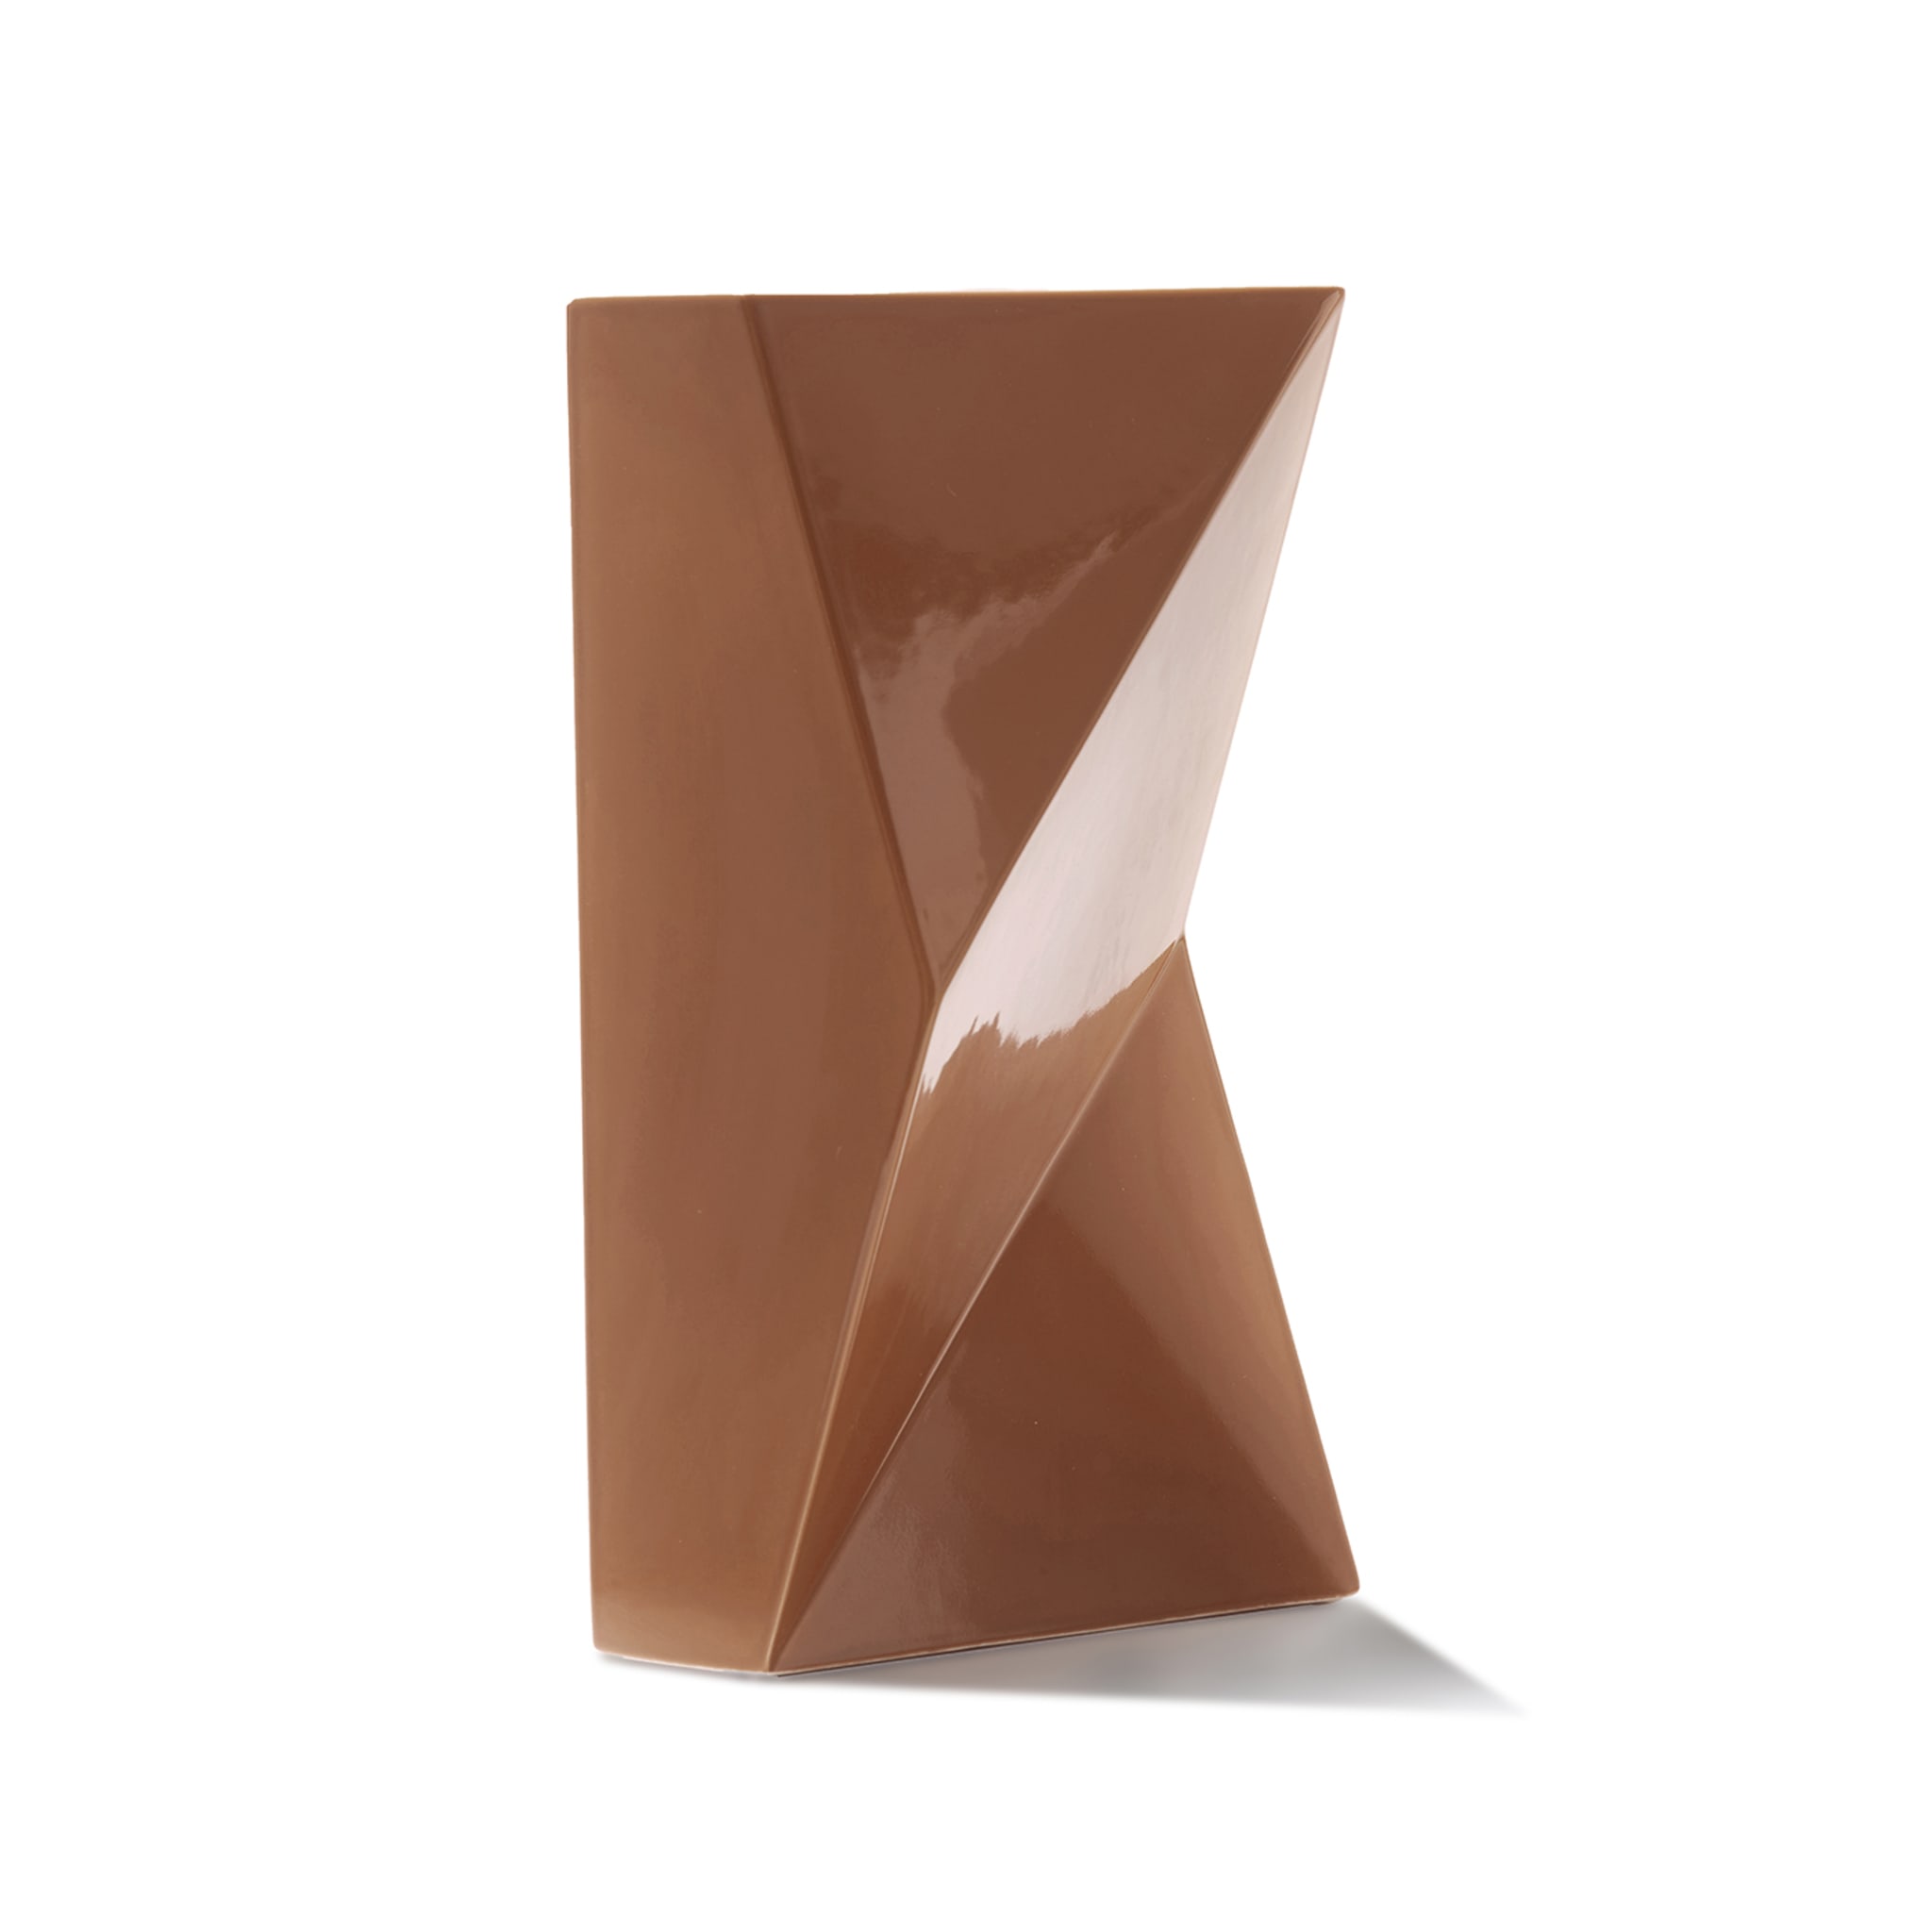 Copper Verso Vase by Antonio Saporito - Alternative view 1